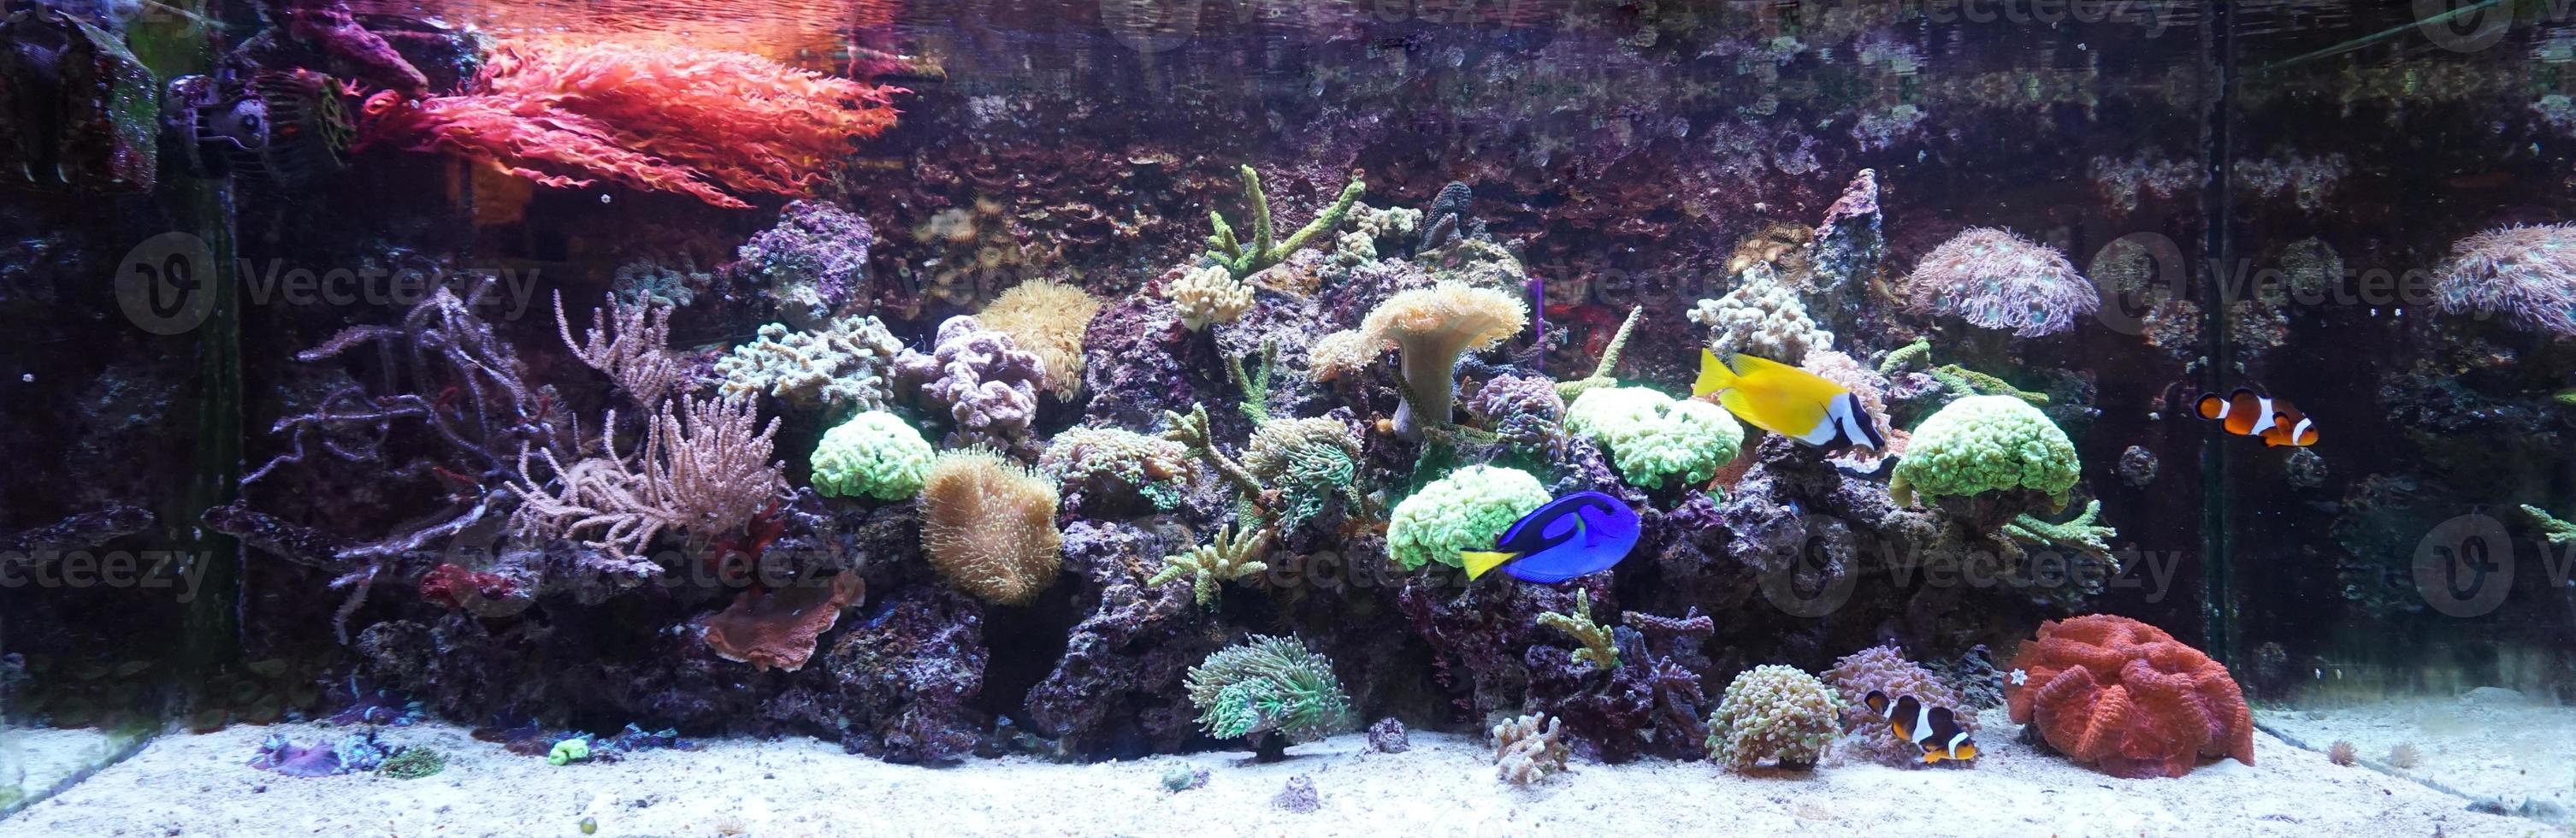 ippopotamo codolo, faccia di volpe coniglio e anemone pesce nuoto nel acquario con corallo scogliera foto